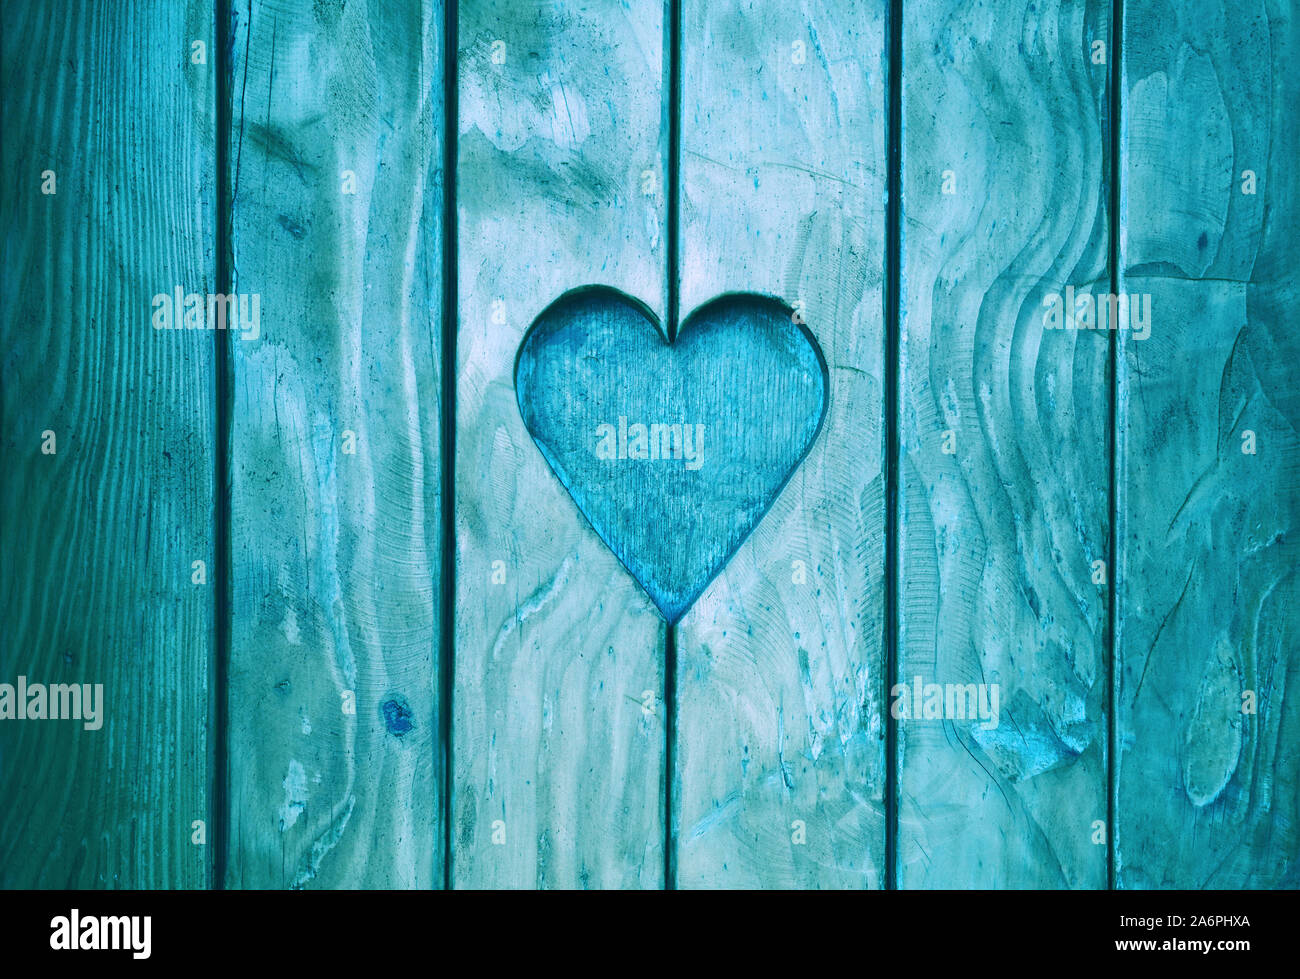 Près d'une forme de coeur, symbole de l'amour et de romance, en bois sculpté en bois peint bleu volets Banque D'Images